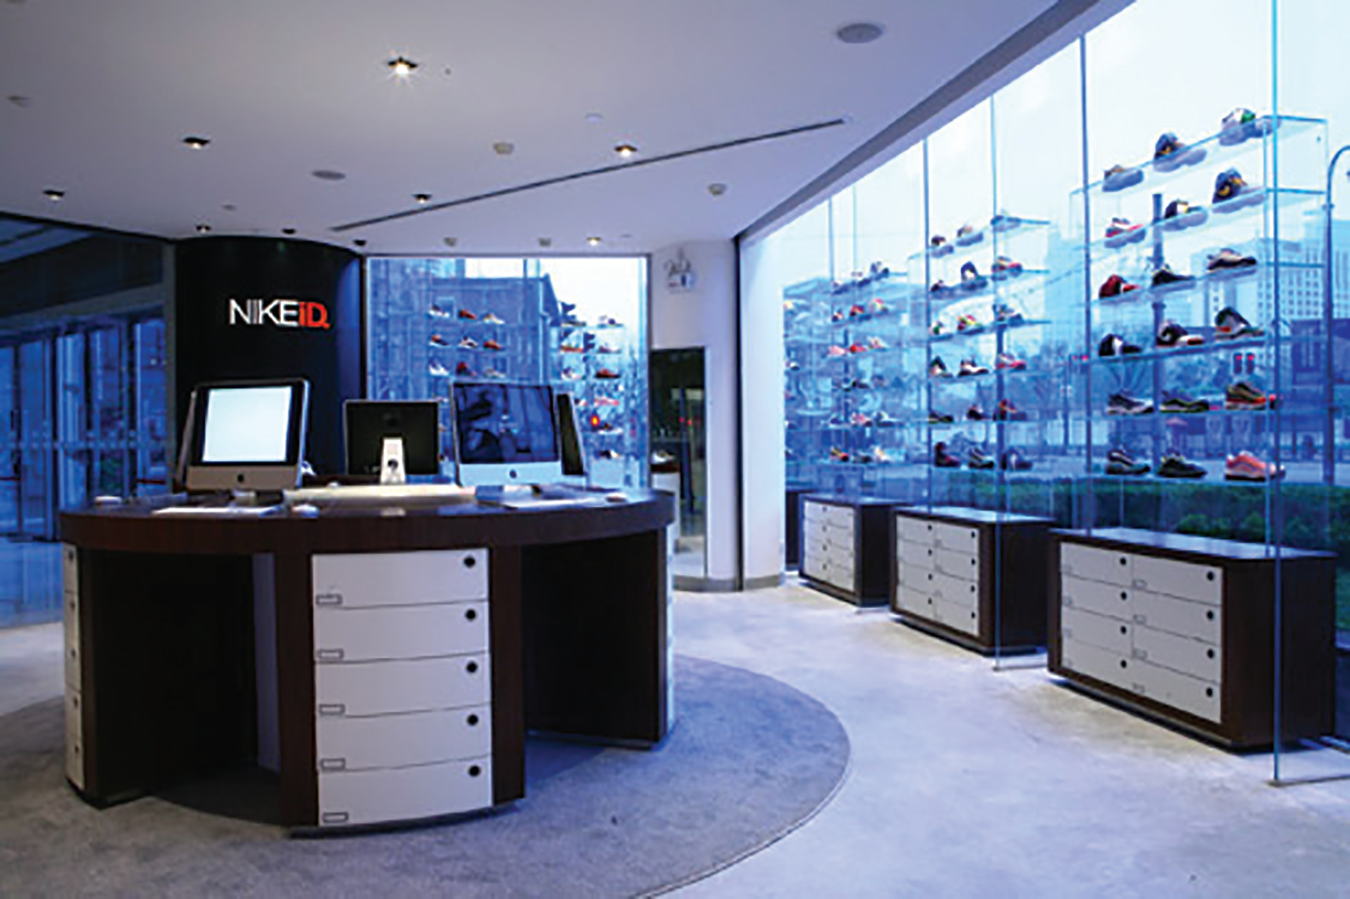 Uma foto do interior de uma loja NikeID mostrando sapatos nas prateleiras por janelas de vidro com vista para muitos edifícios altos.